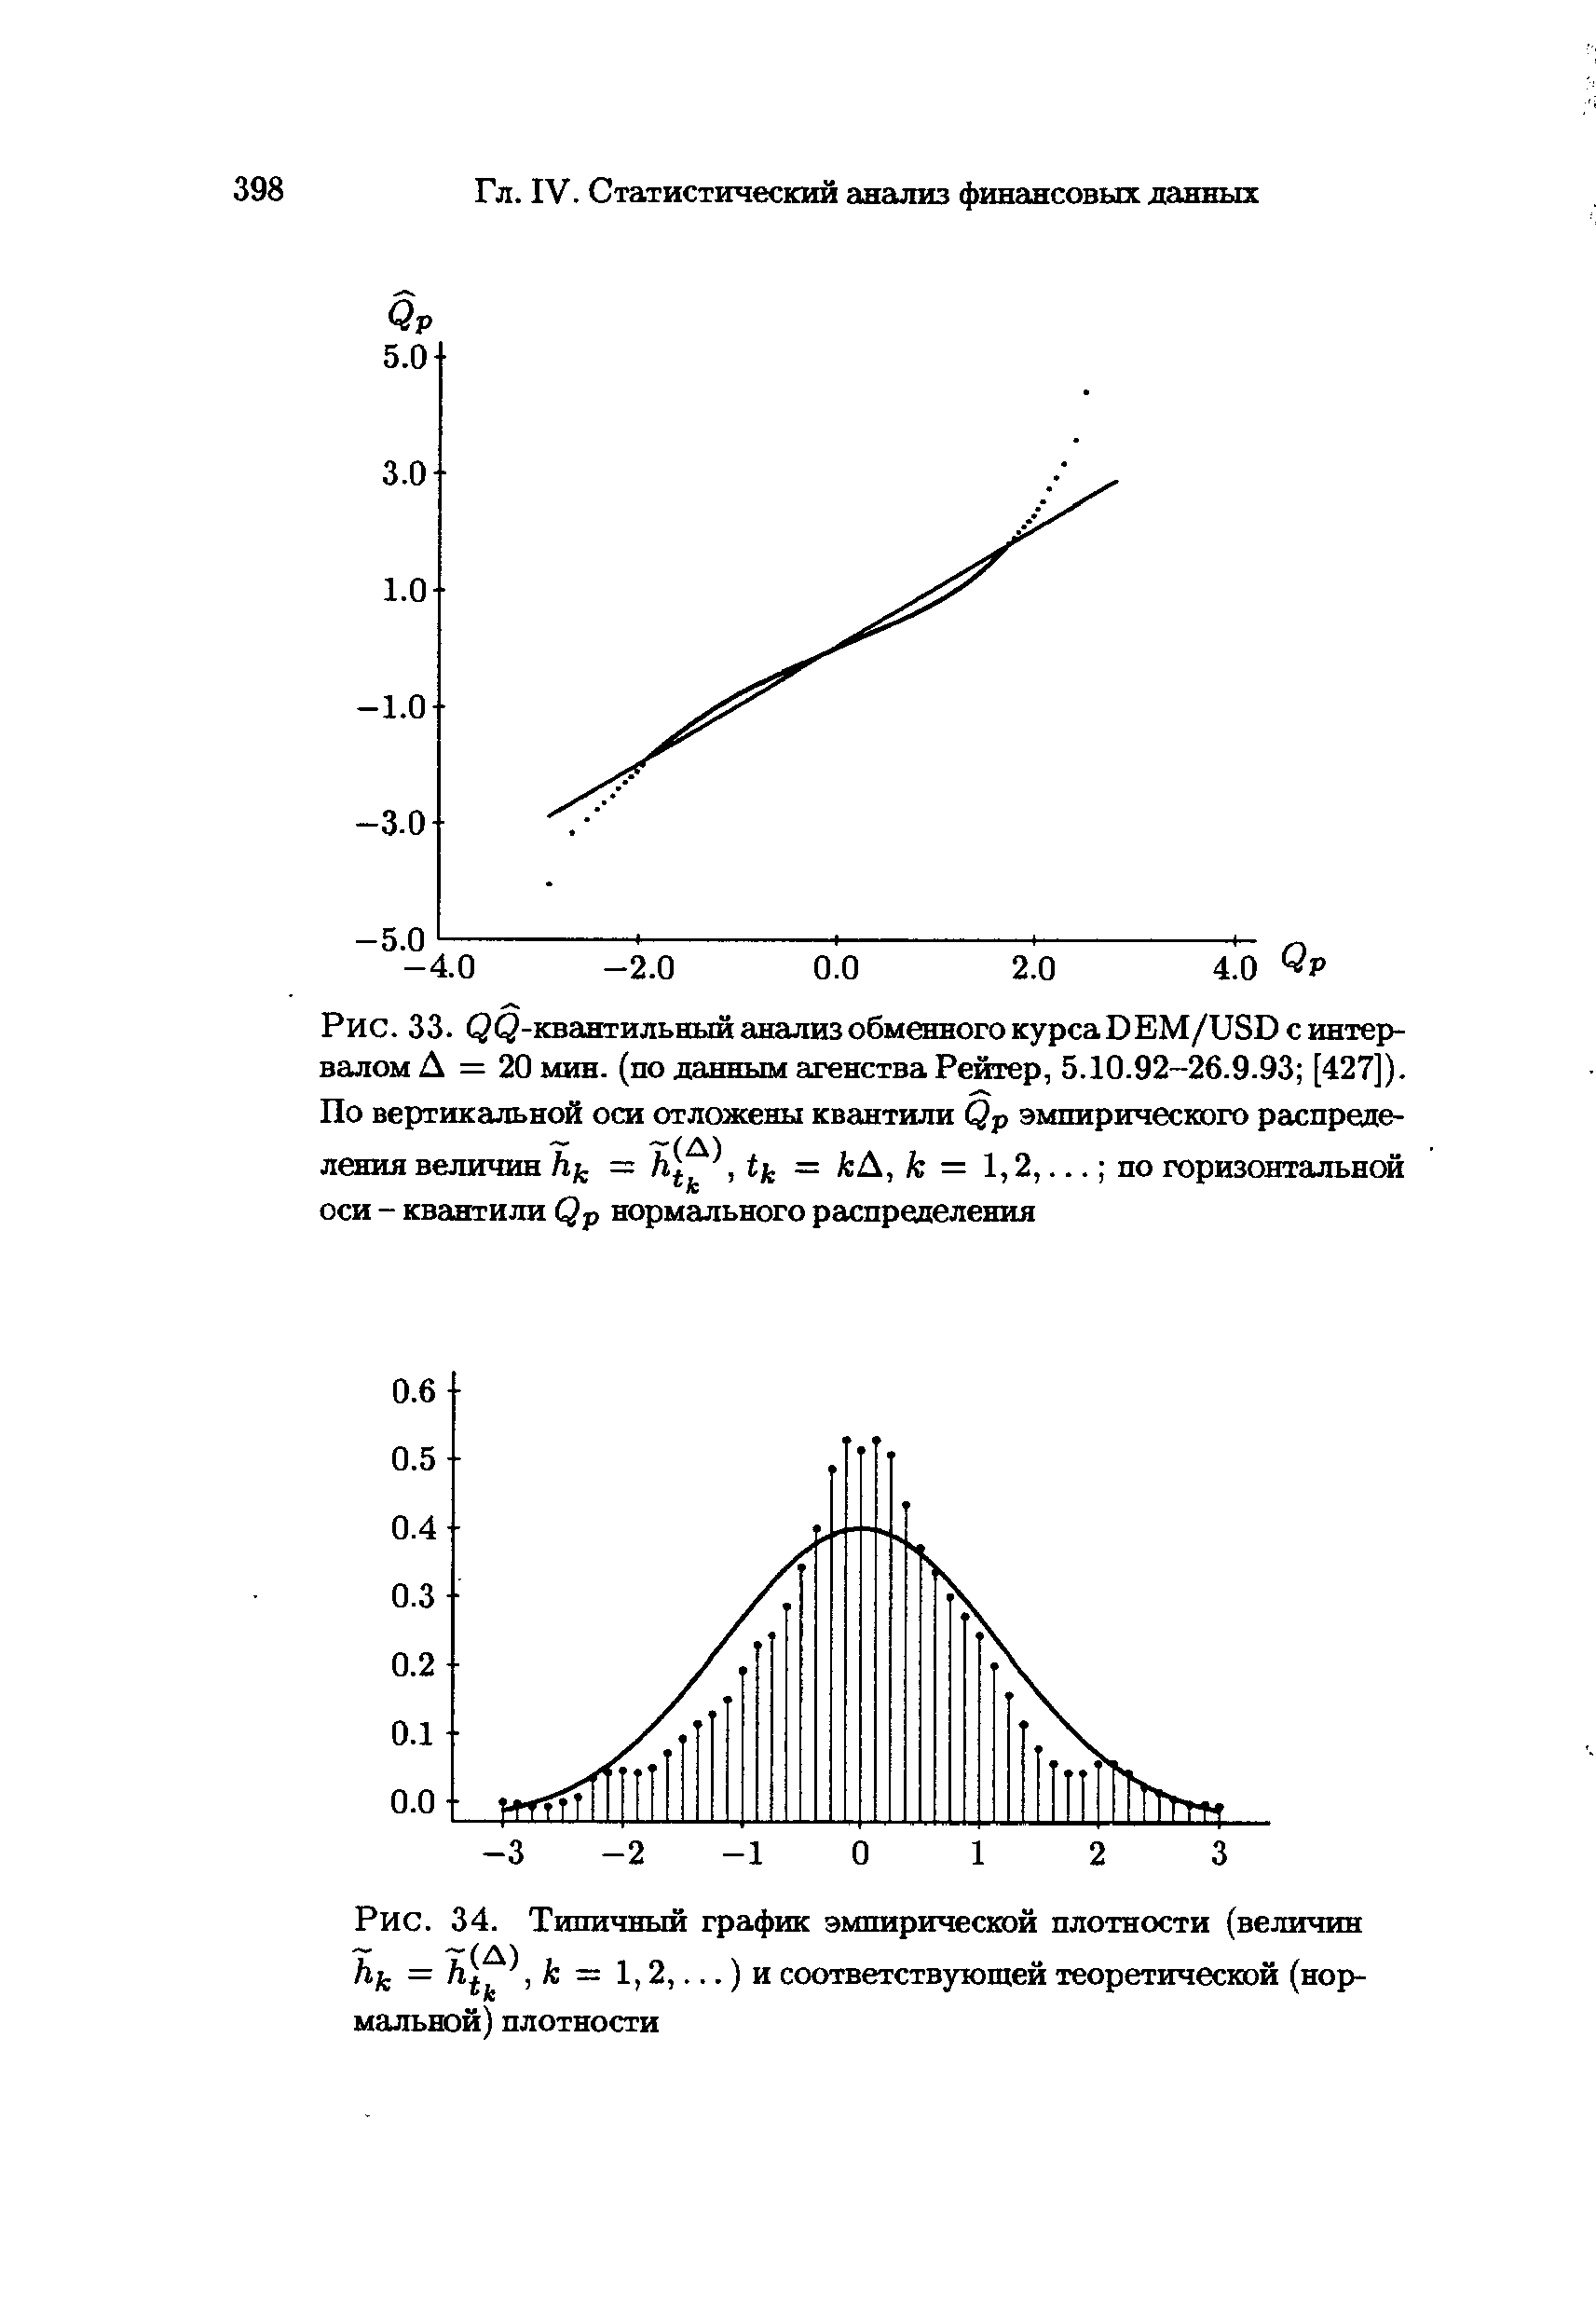 Рис. 34. Типичный график эмпирической плотности (величин hk = /ij, k — 1,2,...) и соответствующей теоретической (нормальной) плотности
